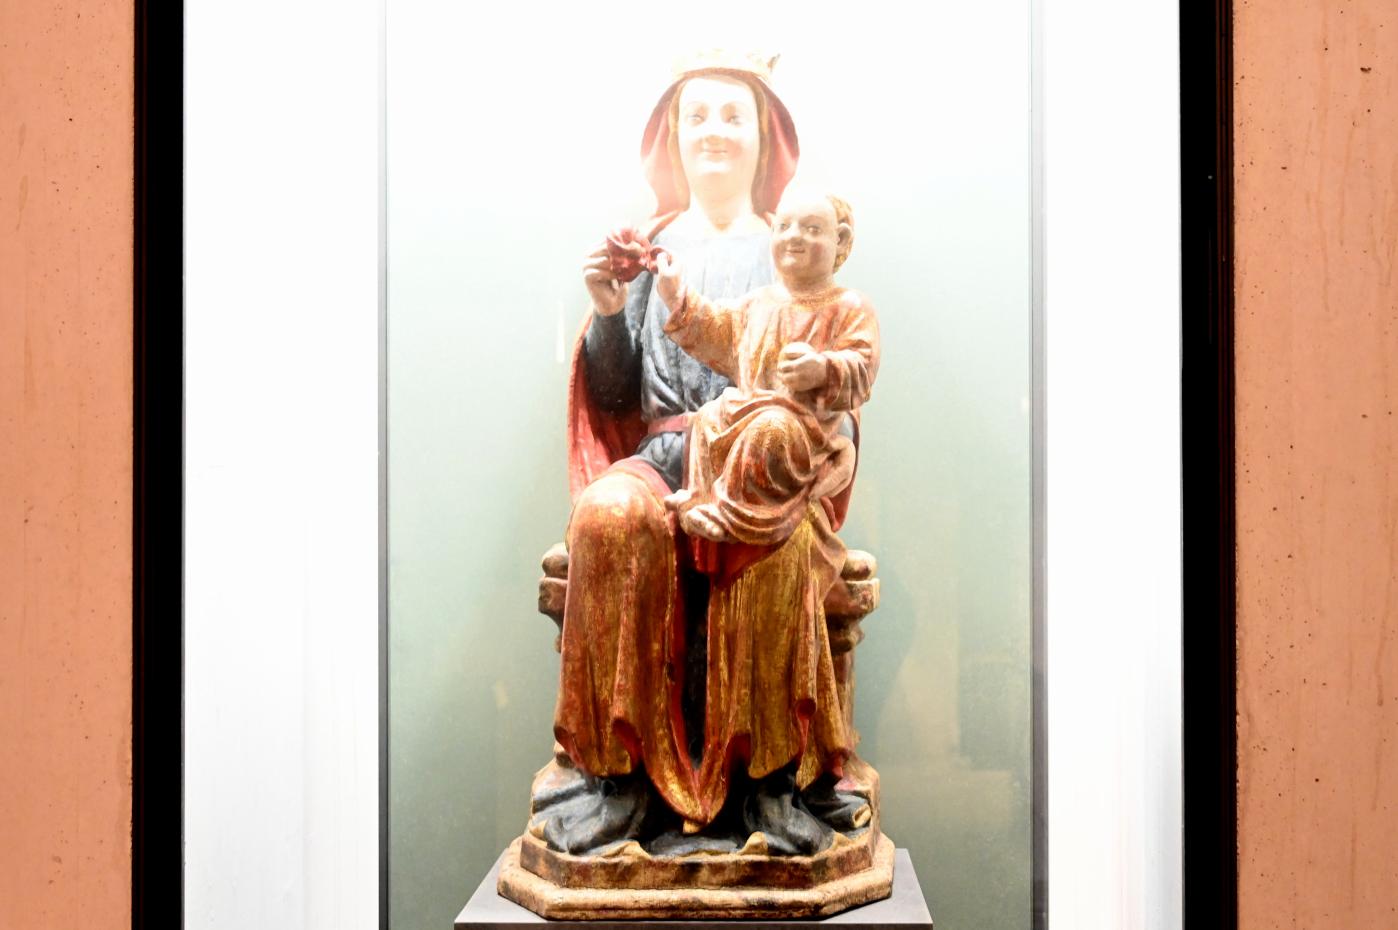 Thronende Maria mit Kind, Morata de Jalón, jetzt Paris, Musée du Louvre, Saal 164, Ende 13. Jhd.